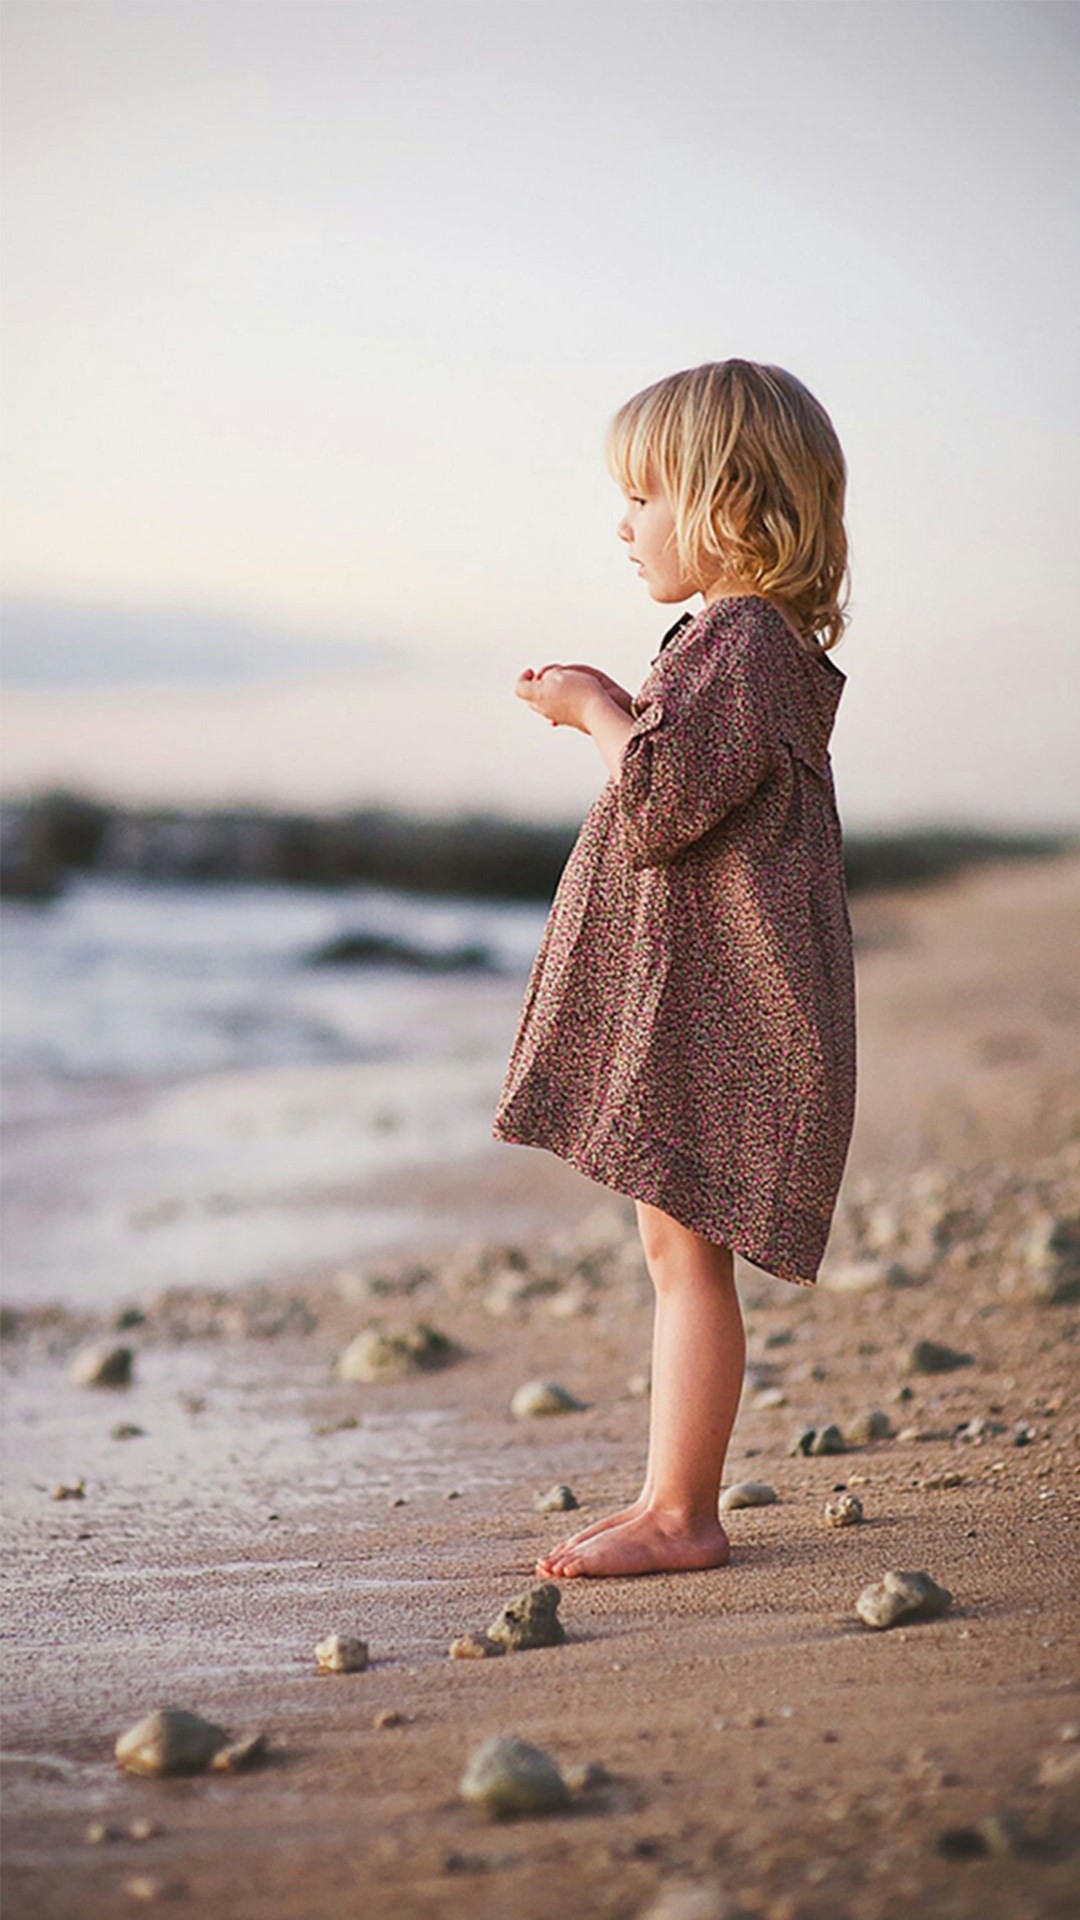 Cute Lovely Little Girl Beach Watching - Little Girl Wallpaper Iphone - HD Wallpaper 